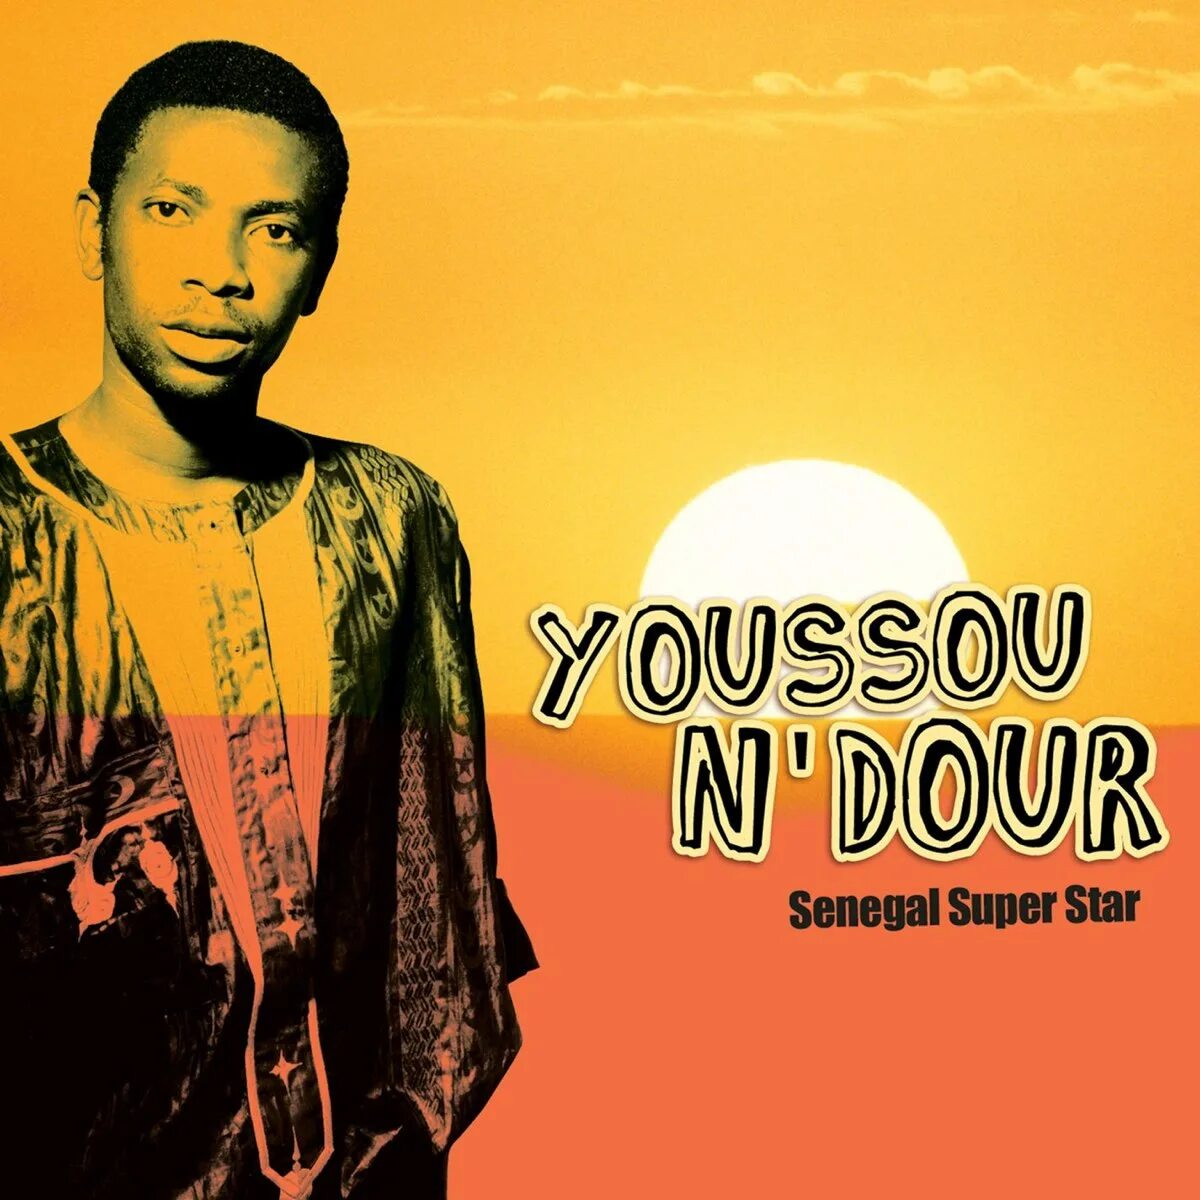 Н дур. Youssou n`Dour. Youssou n'Dour фото. Youssou n'Dour 7 seconds. Youssou n'Dour & Neneh Cherry.